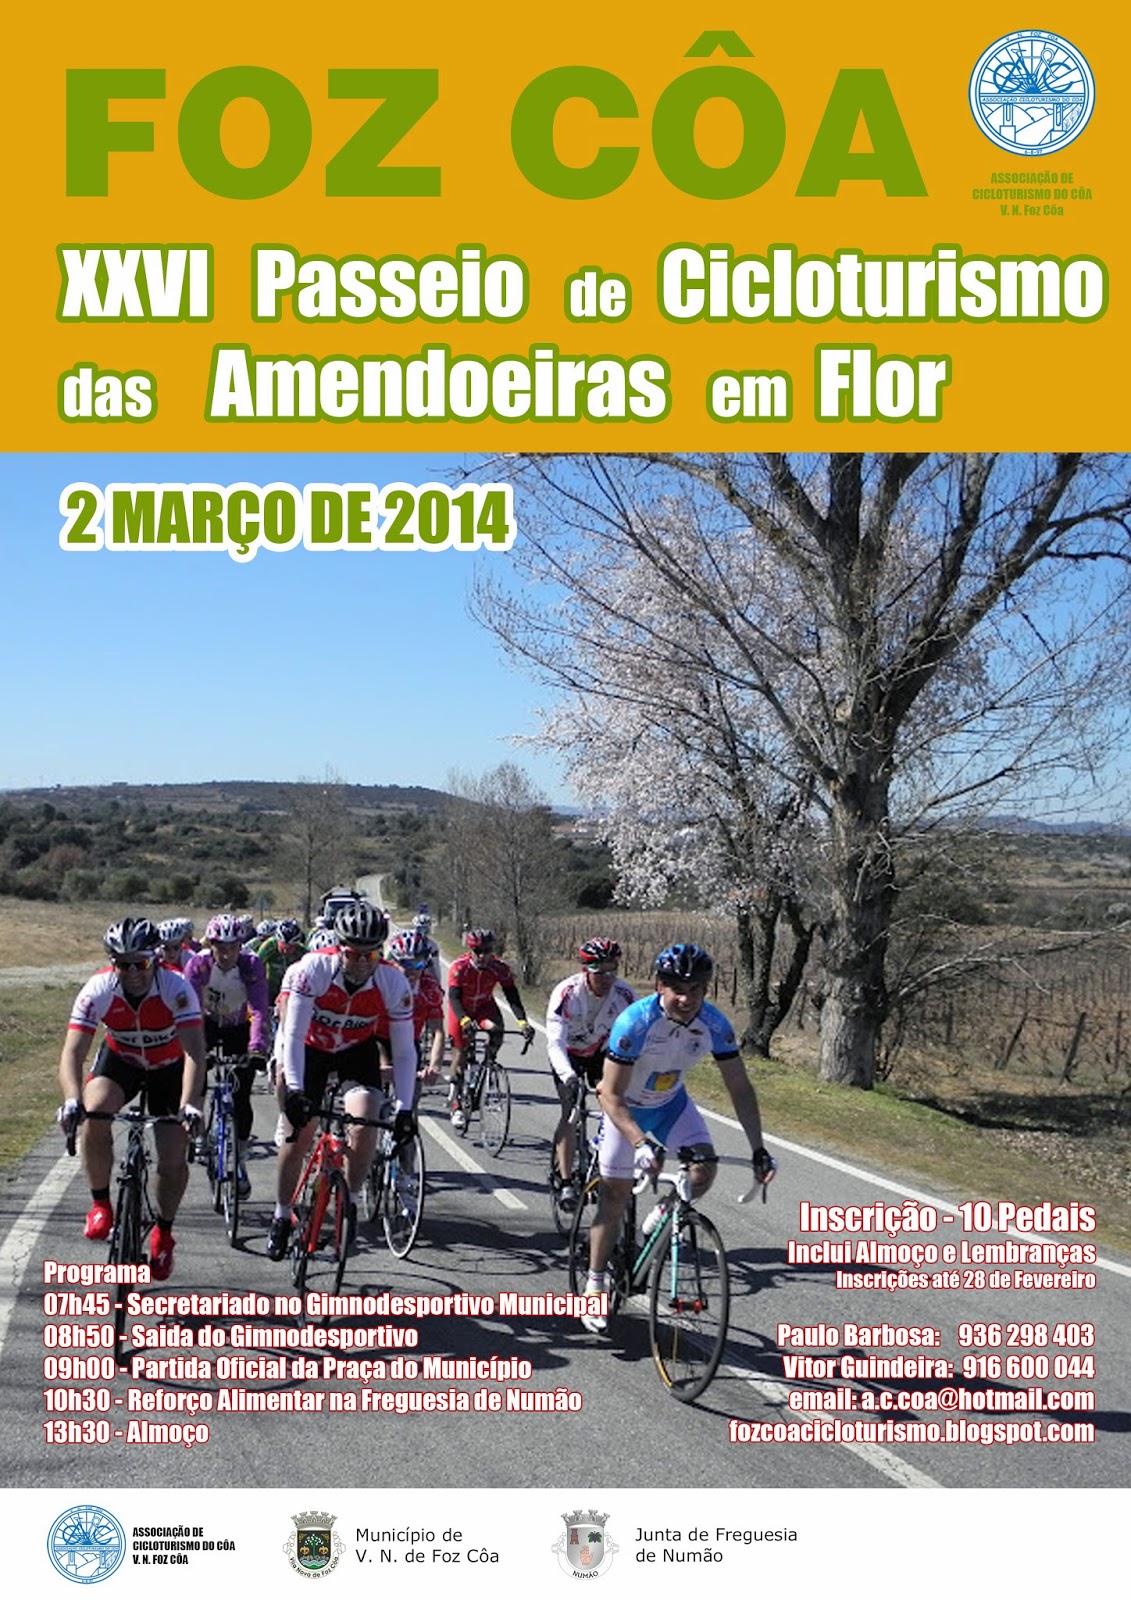 XXVI+Passeio+de+Cicloturismo+2014.jpg